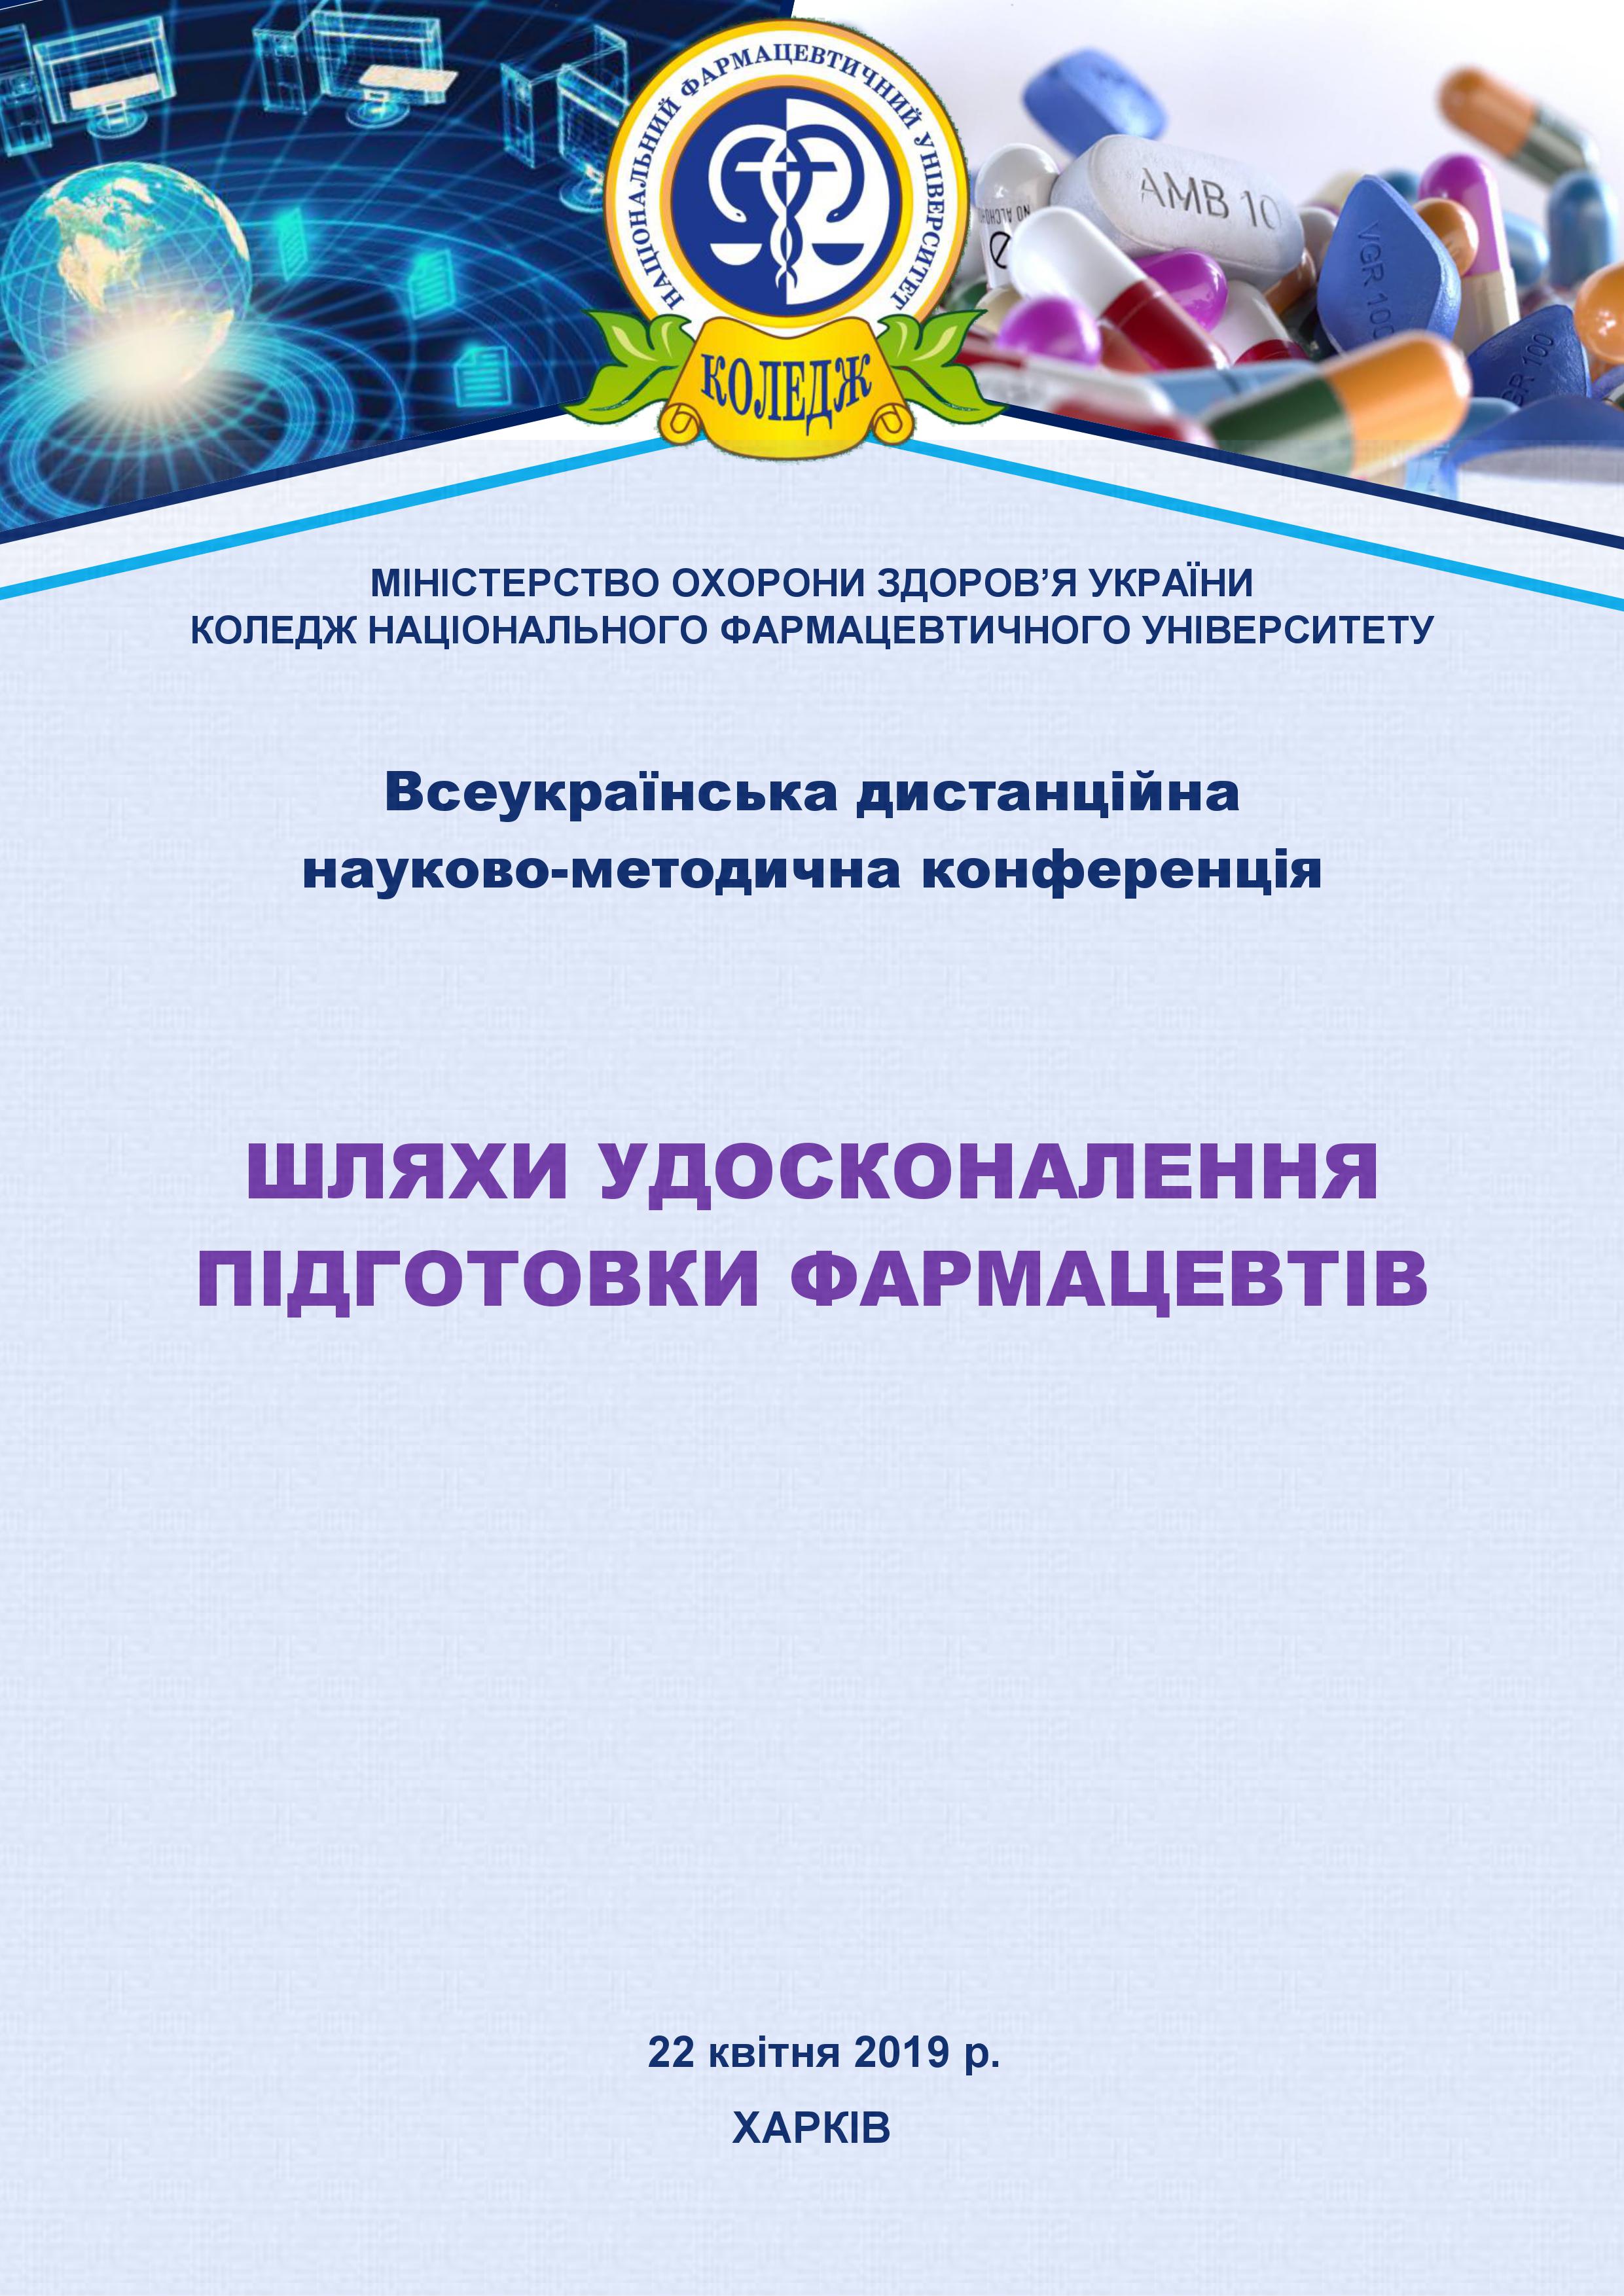 Всеукраїнська дистанційна науково-методична конференція "Шляхи удосконалення підготовки фармацевтів"